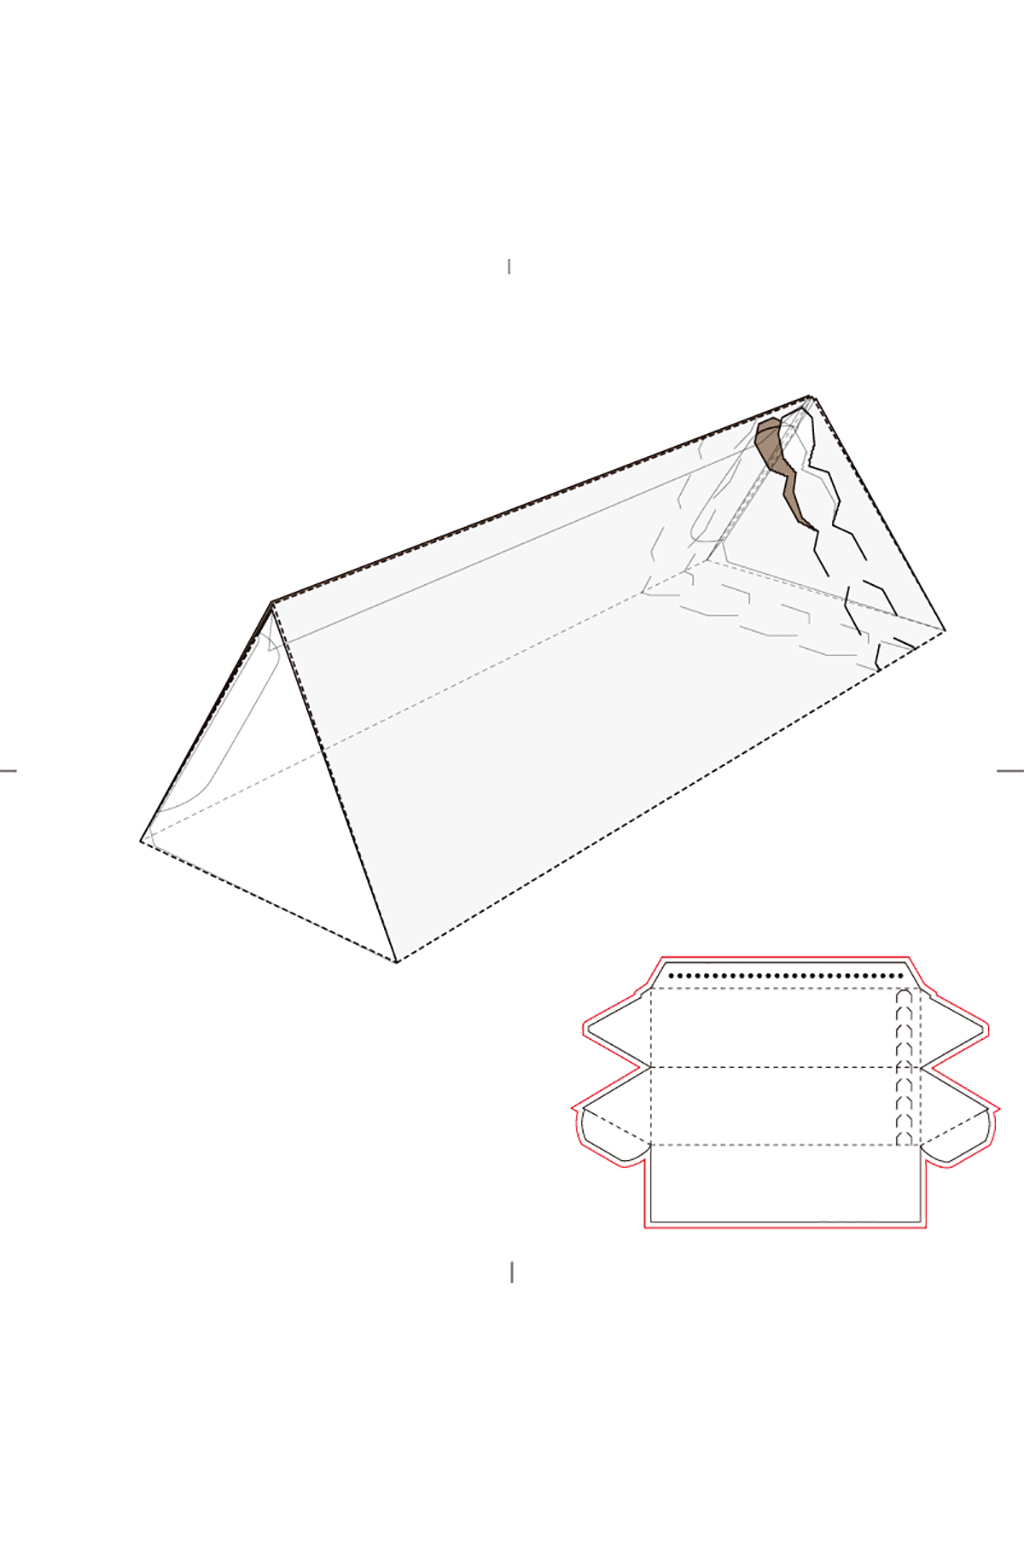 三角形纸盒包装结构图图片